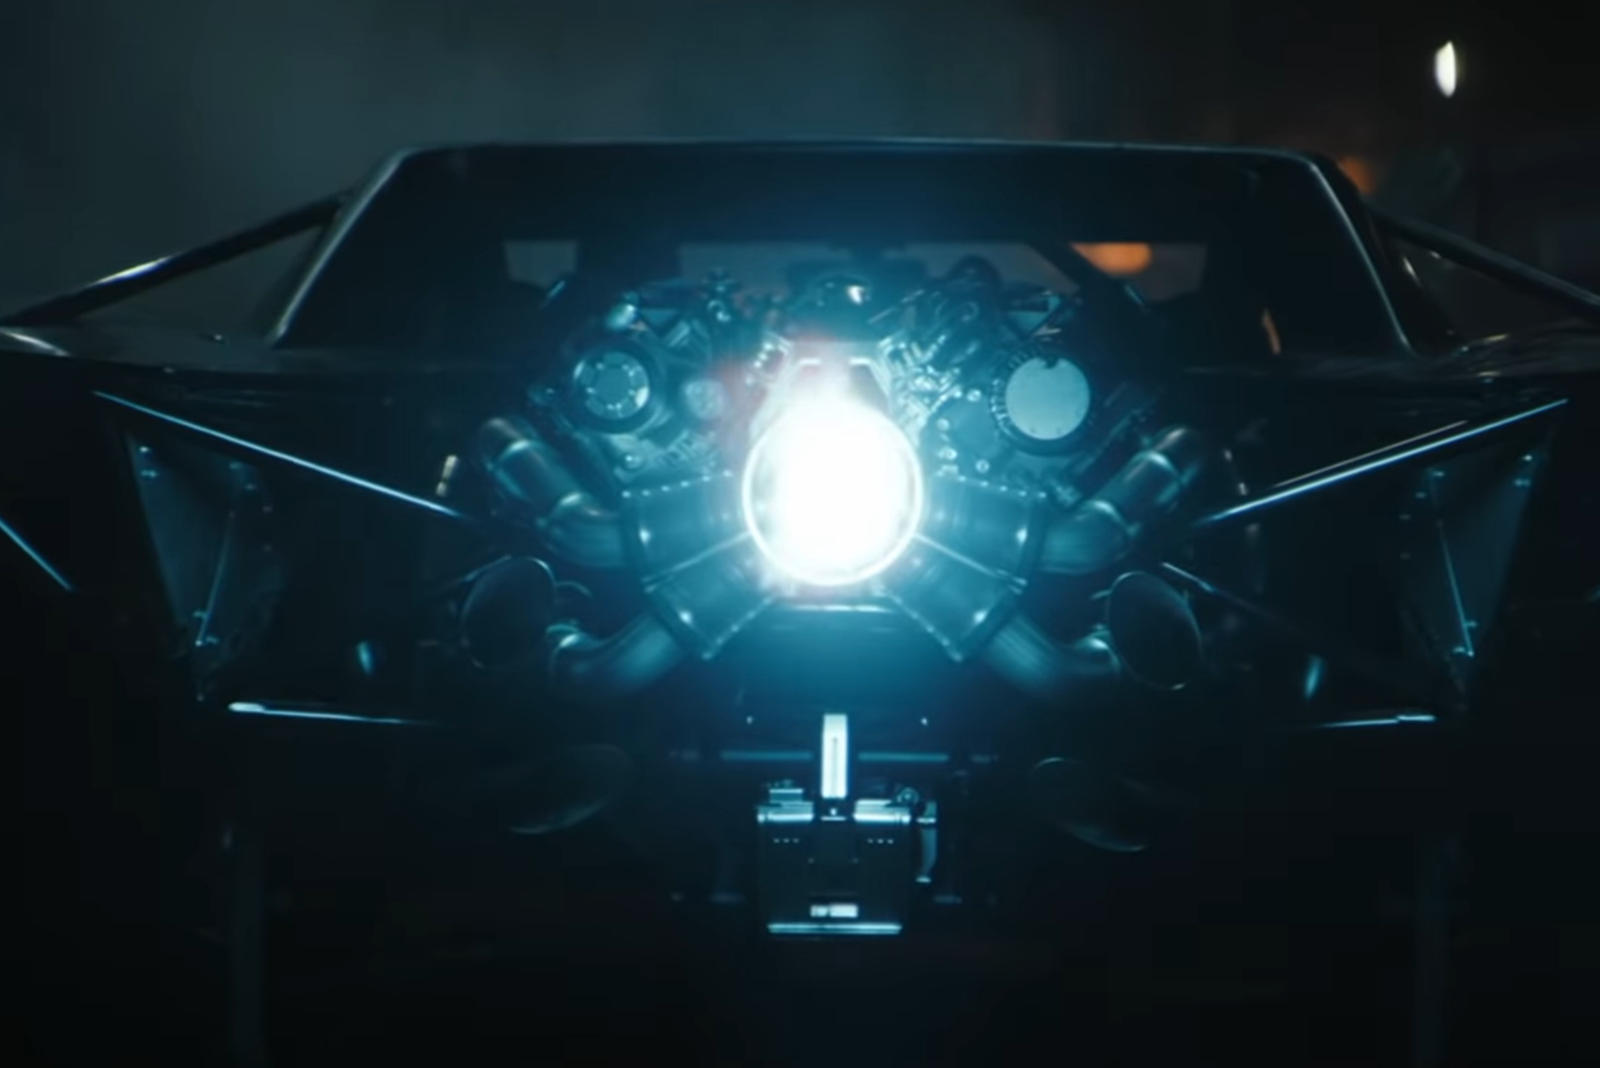 سيارة باتموبيل الجديدة تظهر في إعلان فيلم باتمان القادم 5